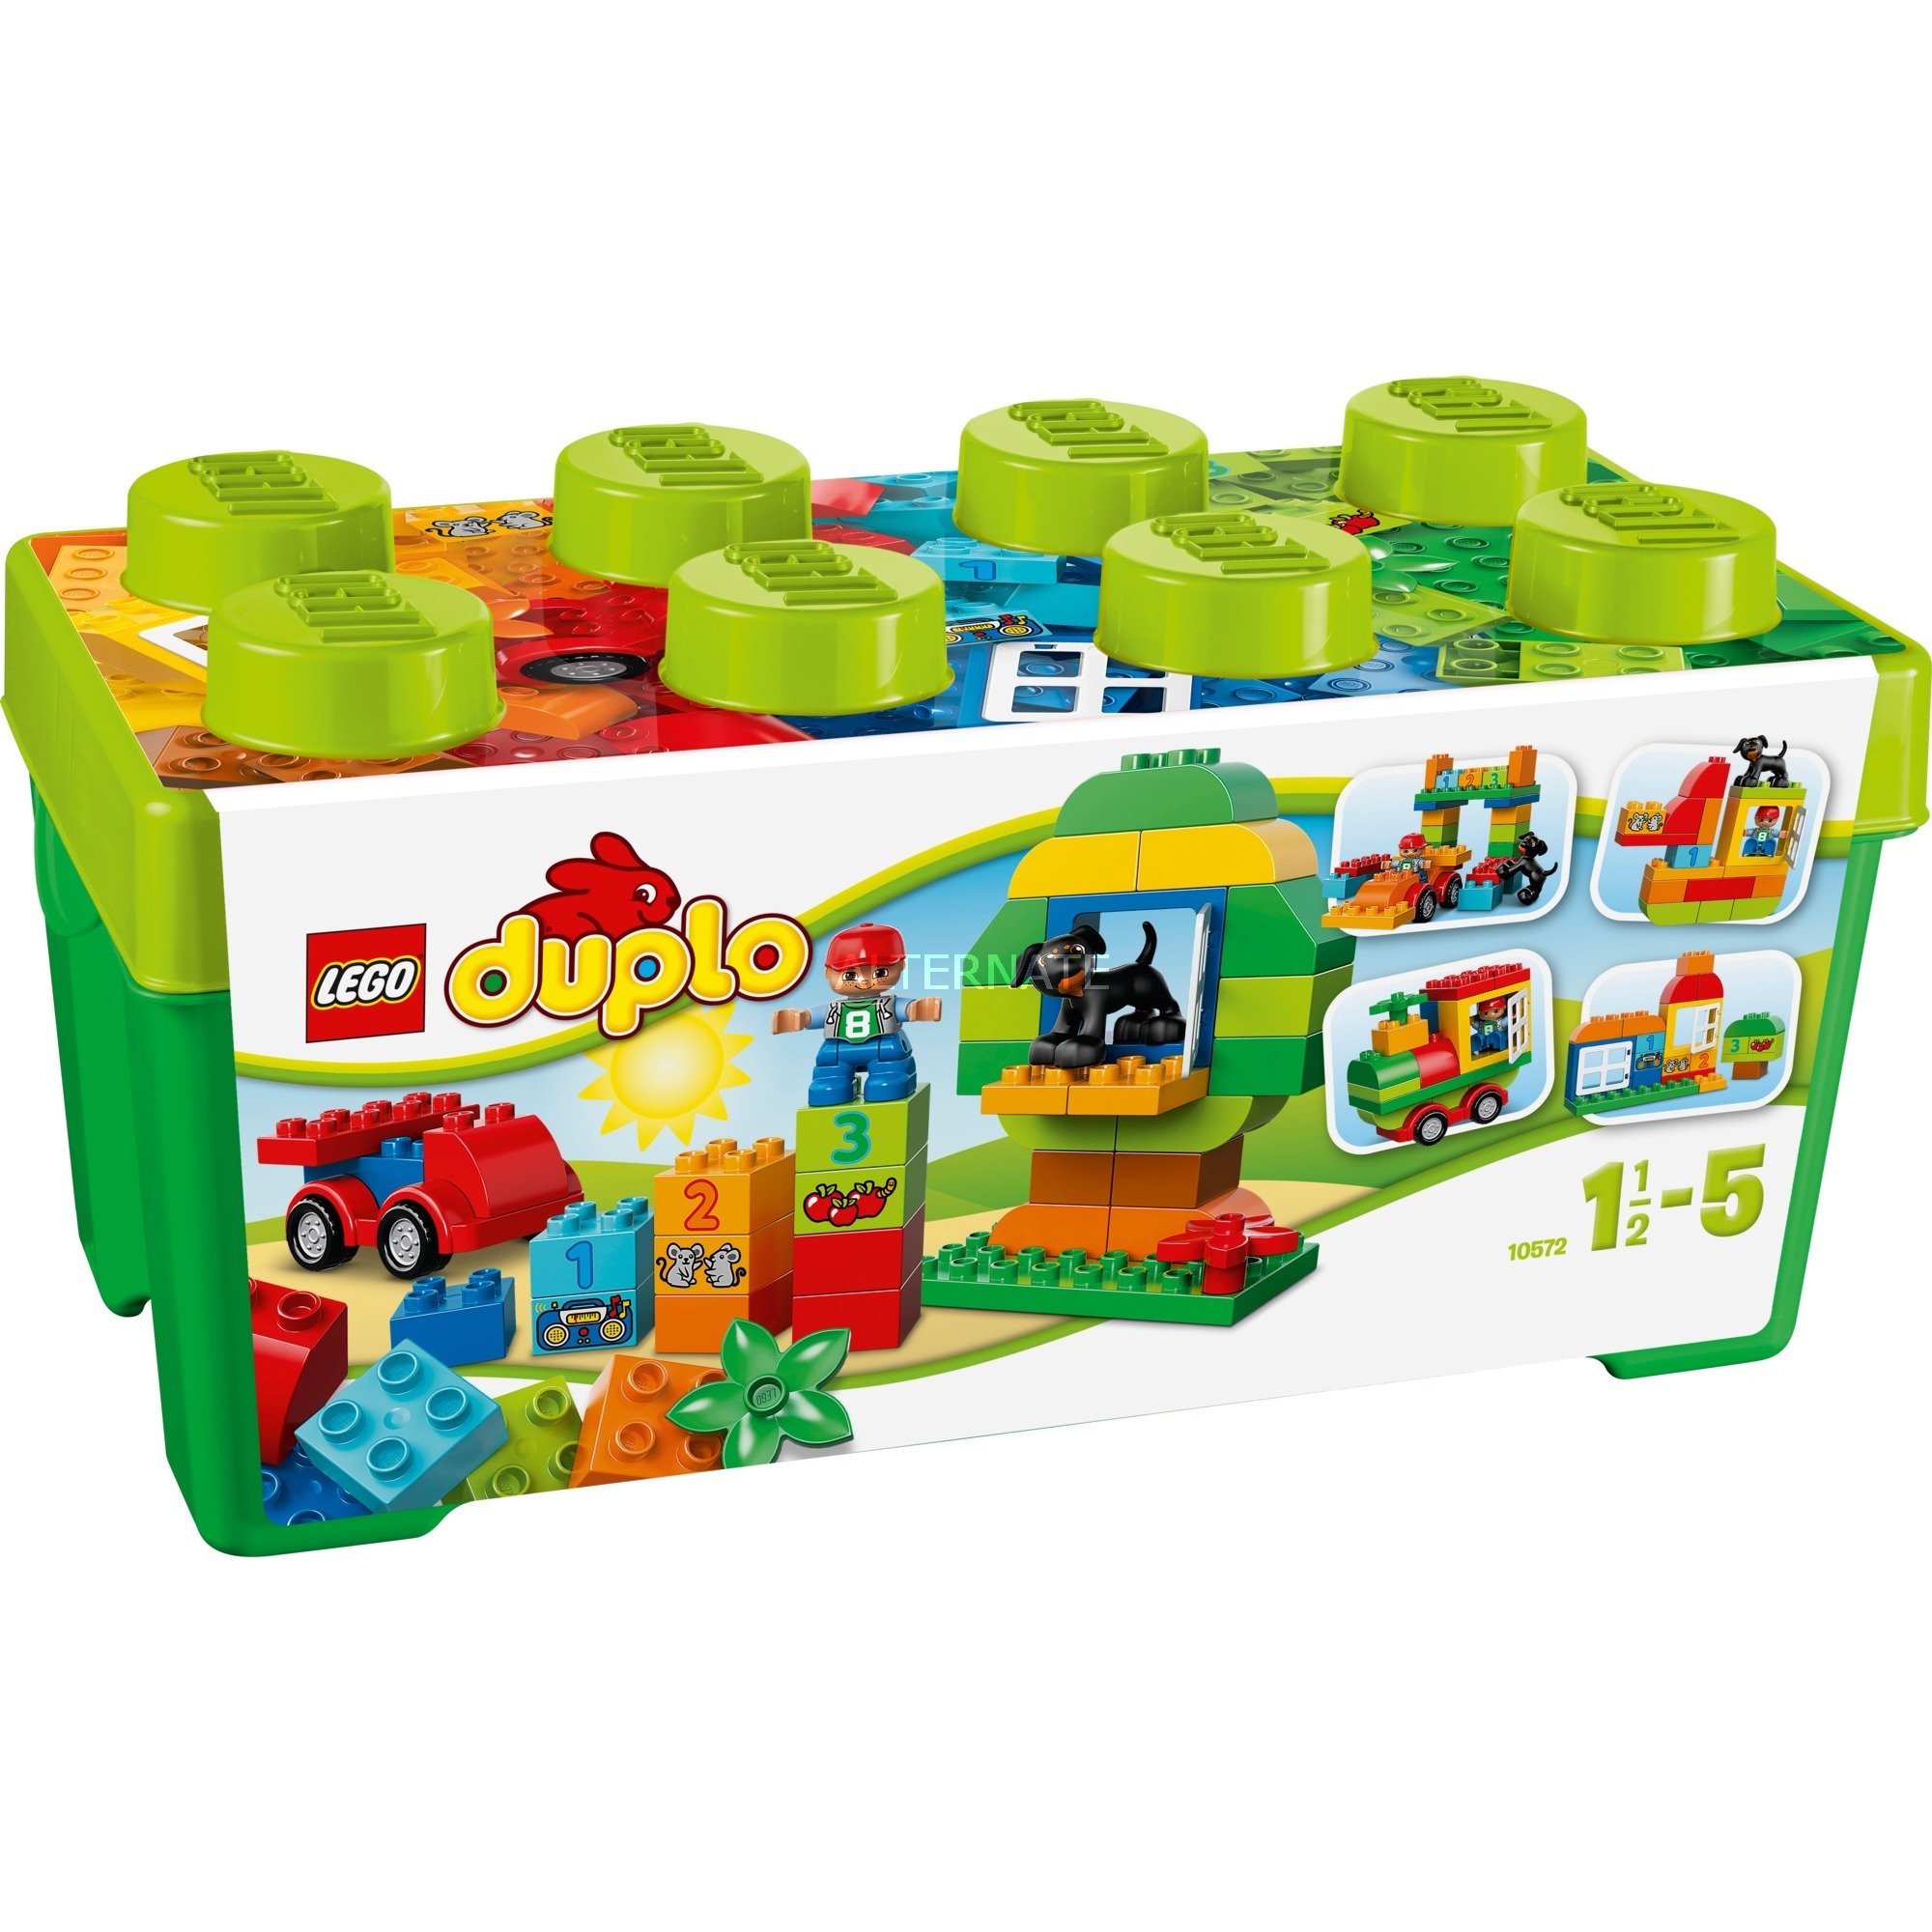 LEGO 10572 Duplo Uniwersalne pudło pełne zabawy